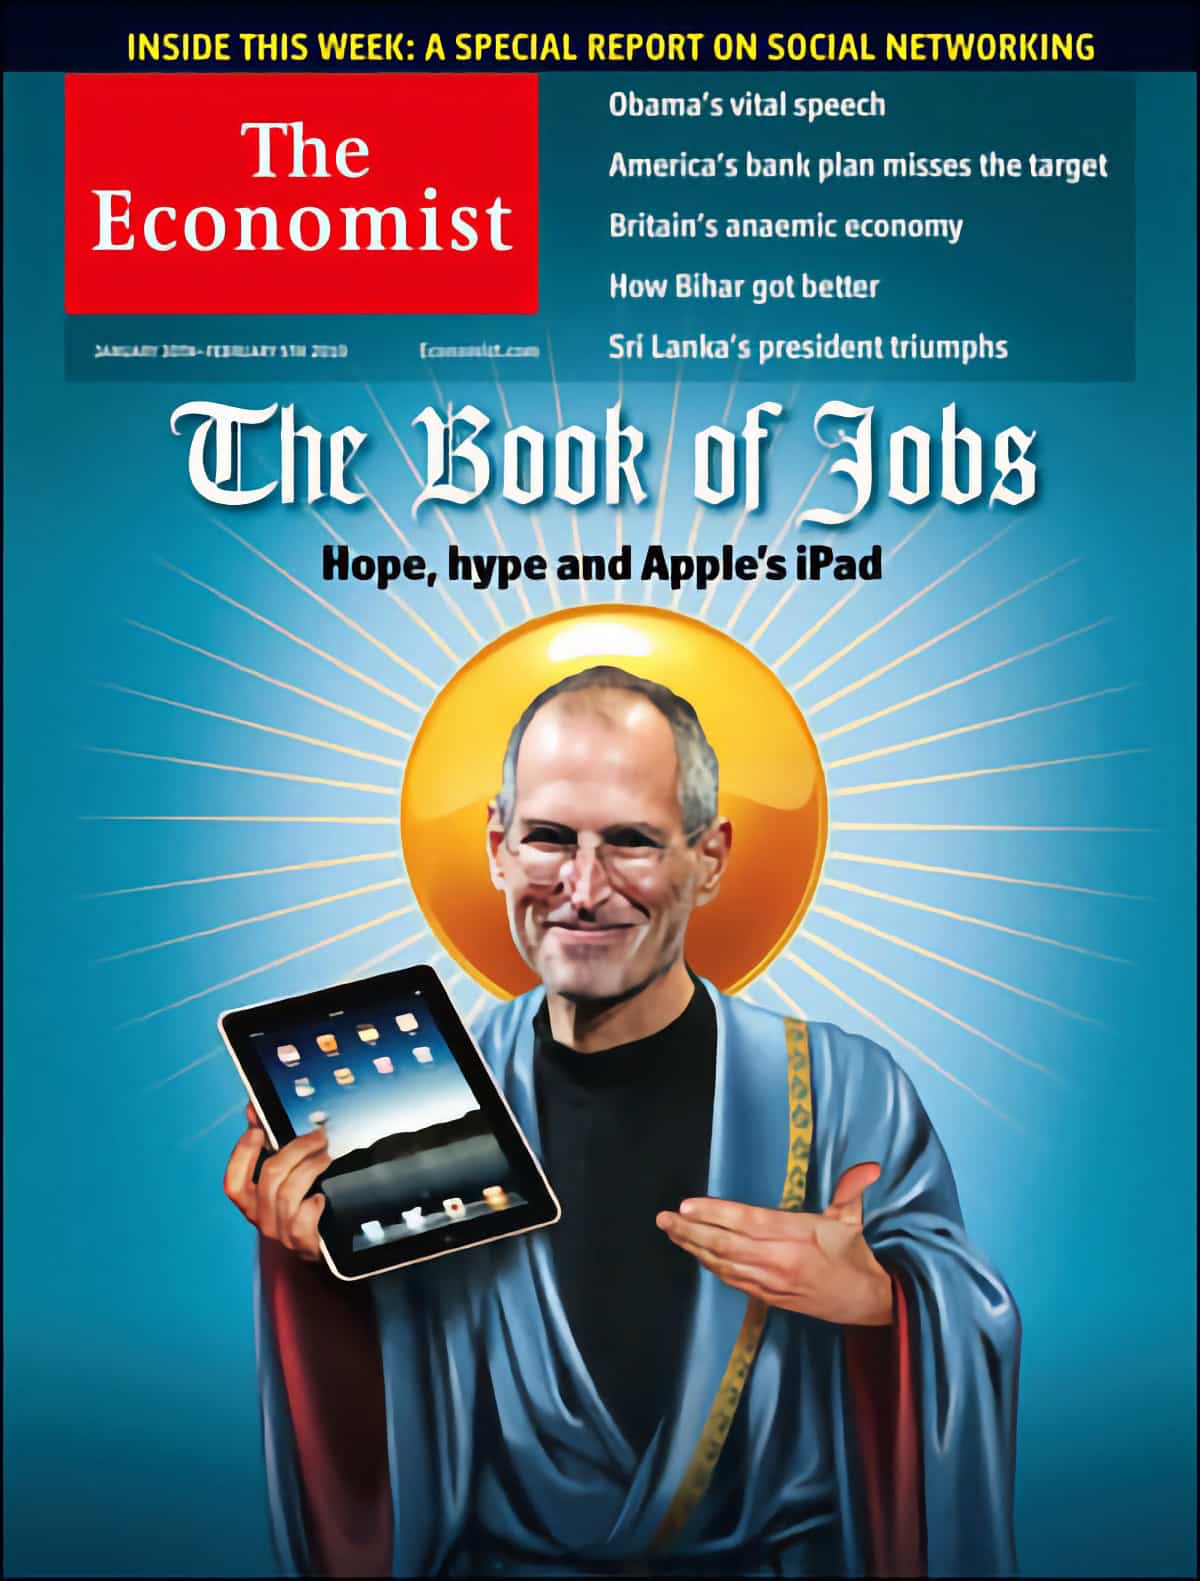 The Economist couverture Apple iPad Steve Jobs